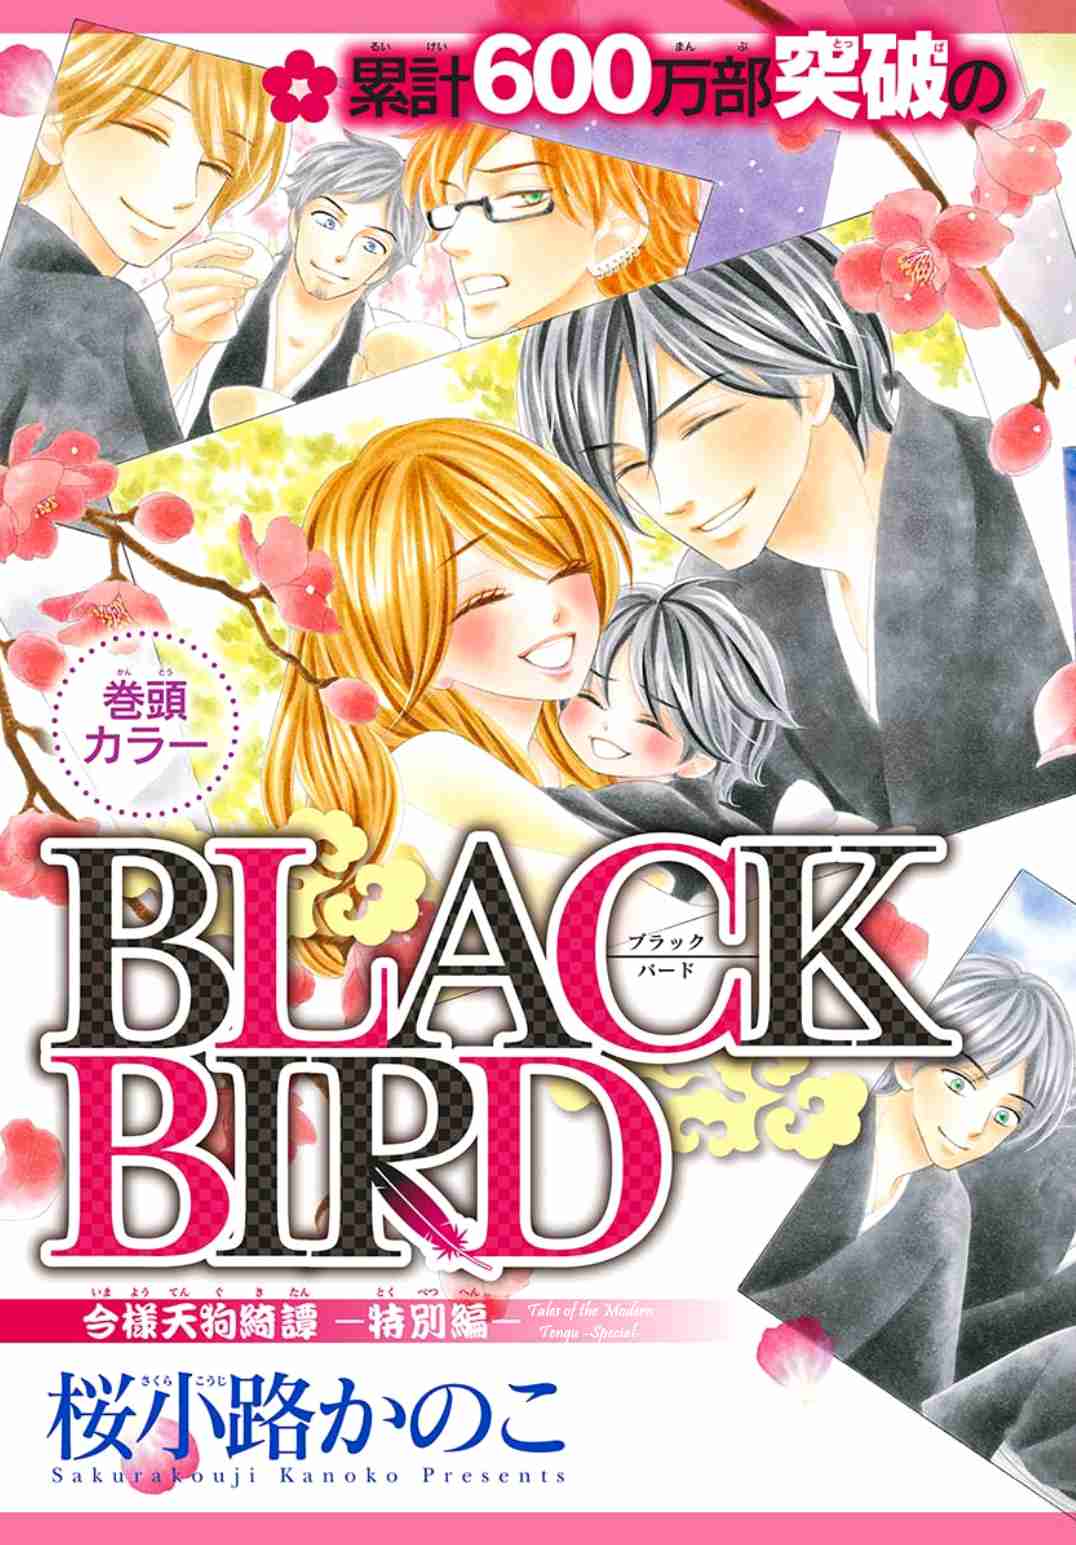 Black Bird Vol. 18 Ch. 72.7 2019 Special